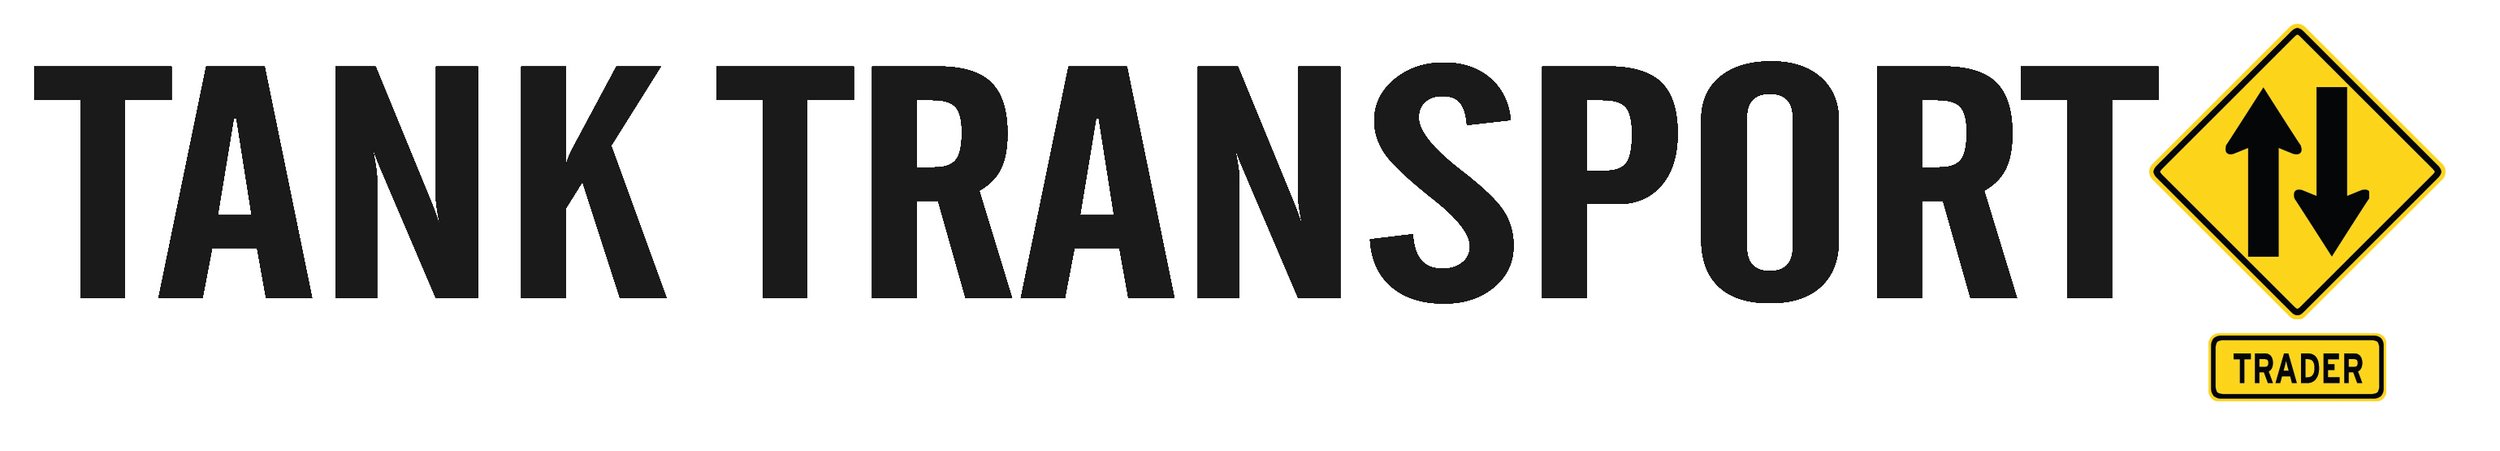 Tank Transport-Logo 1.jpg